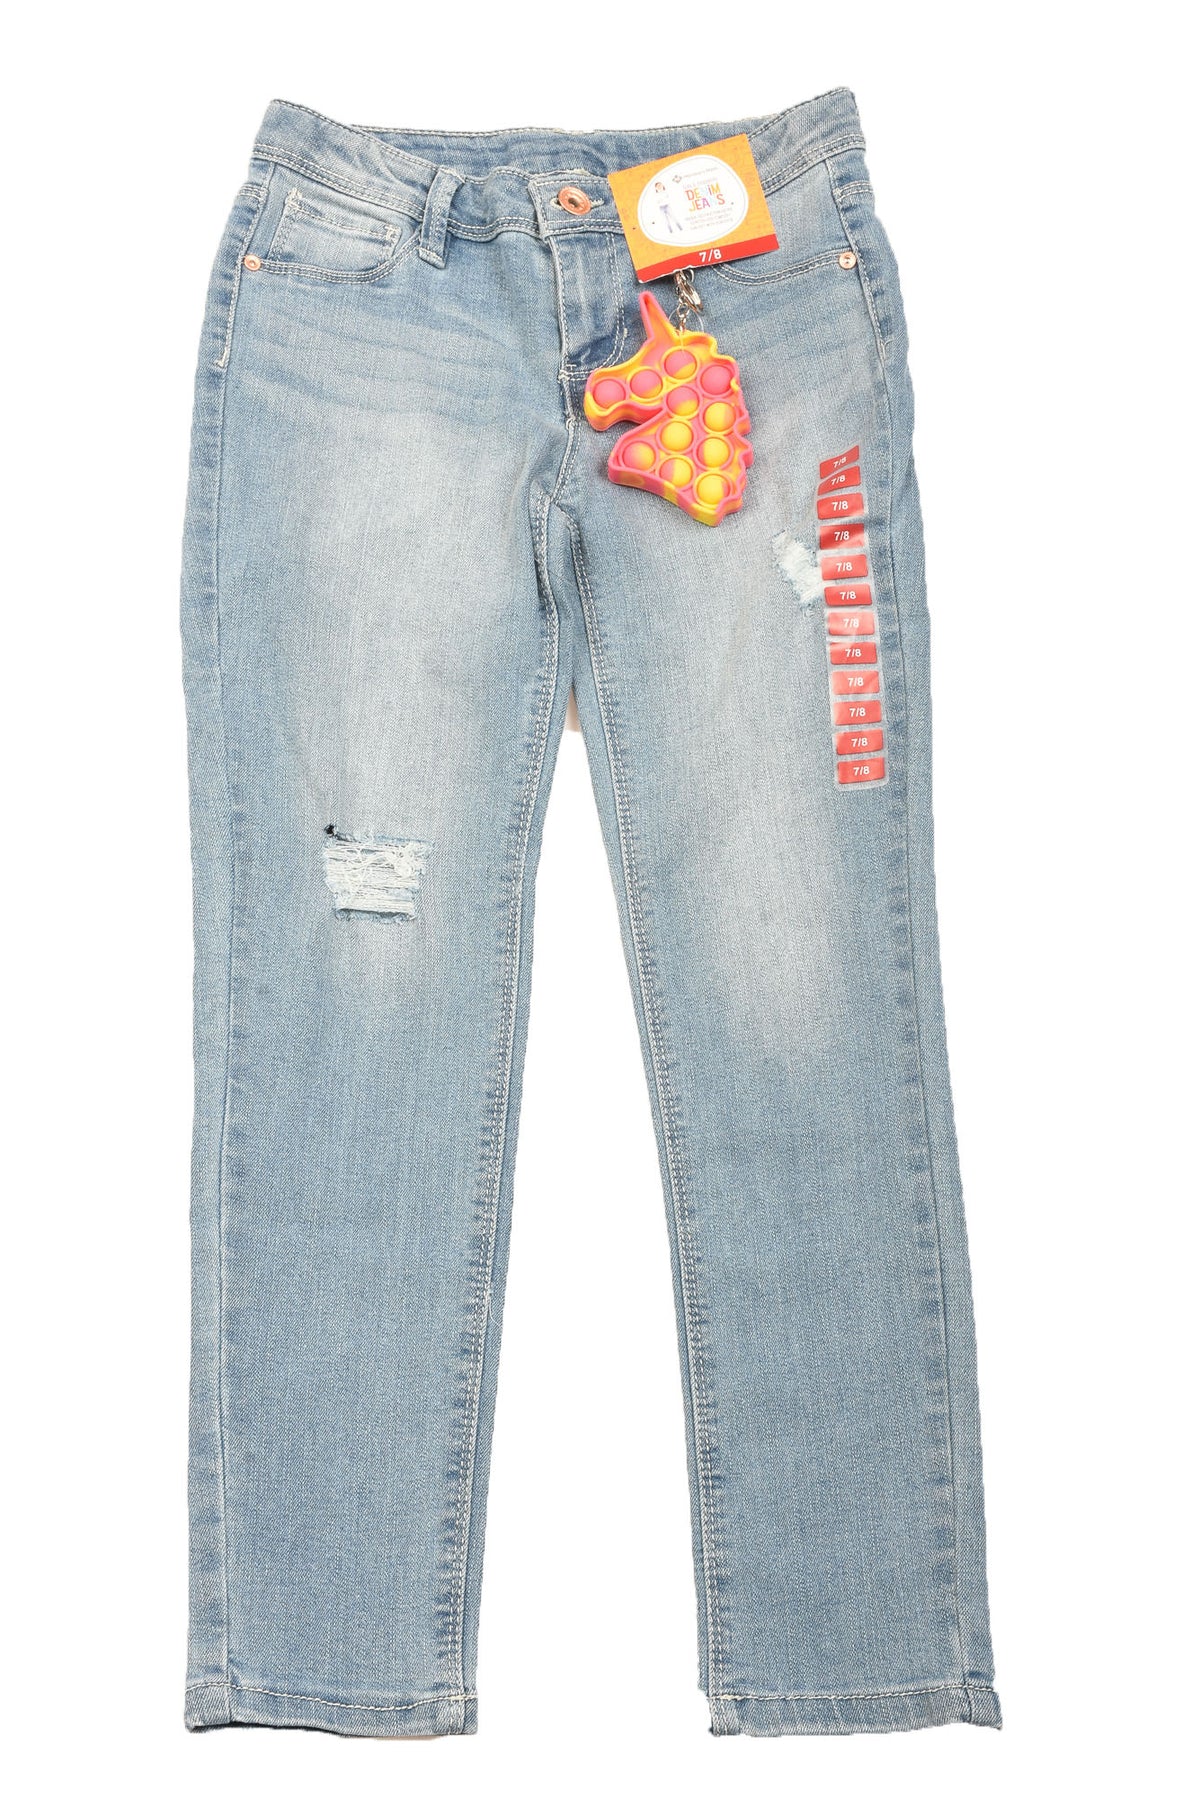 Denim Jeans Size 7 Girl&#39;s Jeans